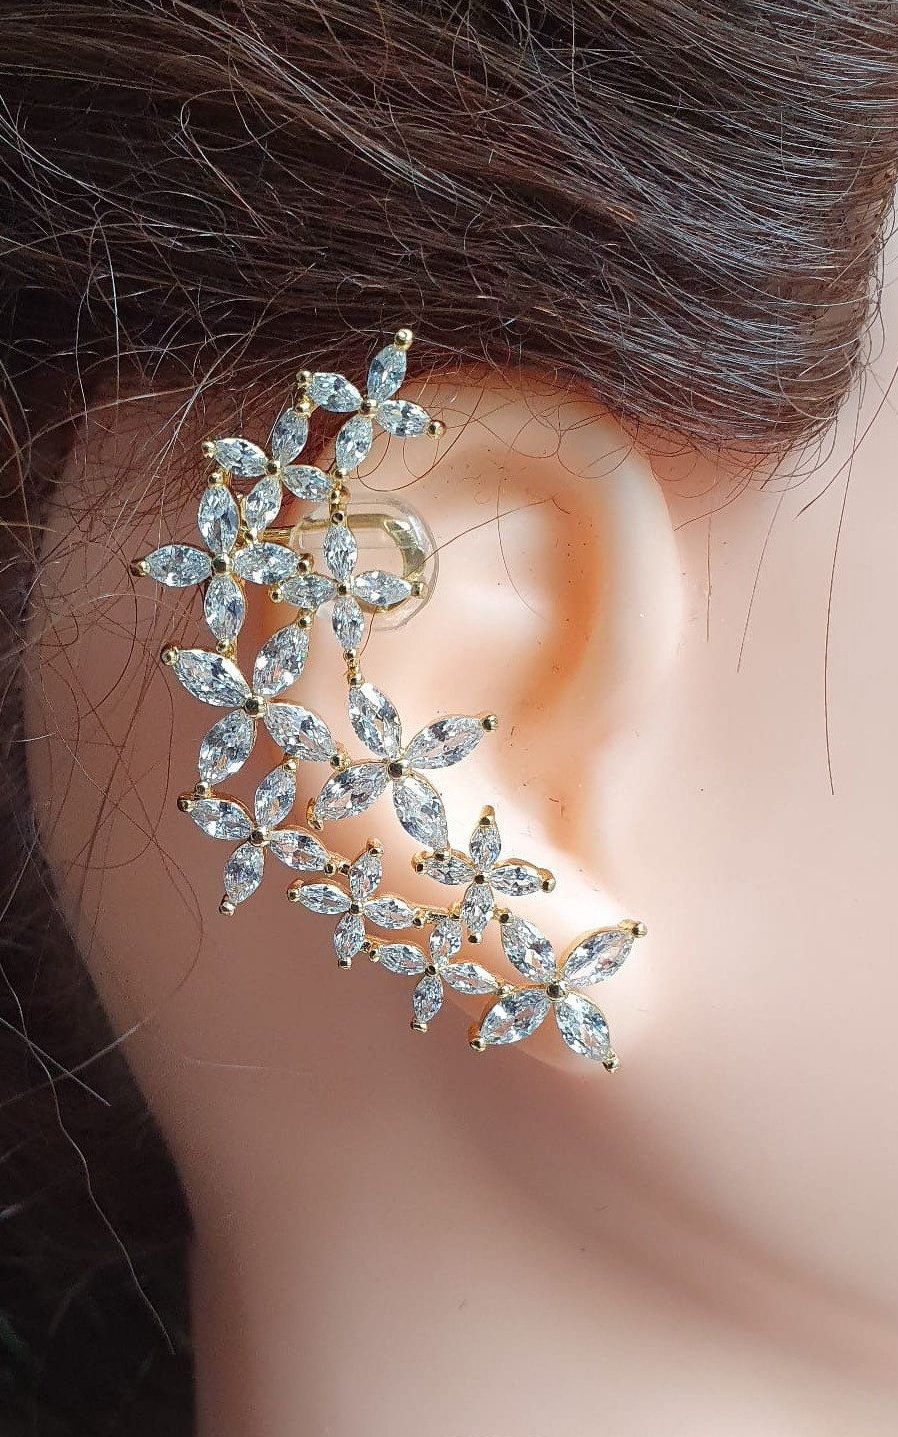 Cute Multiple Cartilage Ear Piercing Ideas – Cross Earring Studs Hoop Rings  – www. Impuria.com | Earings piercings, Ear piercings, Cute ear piercings